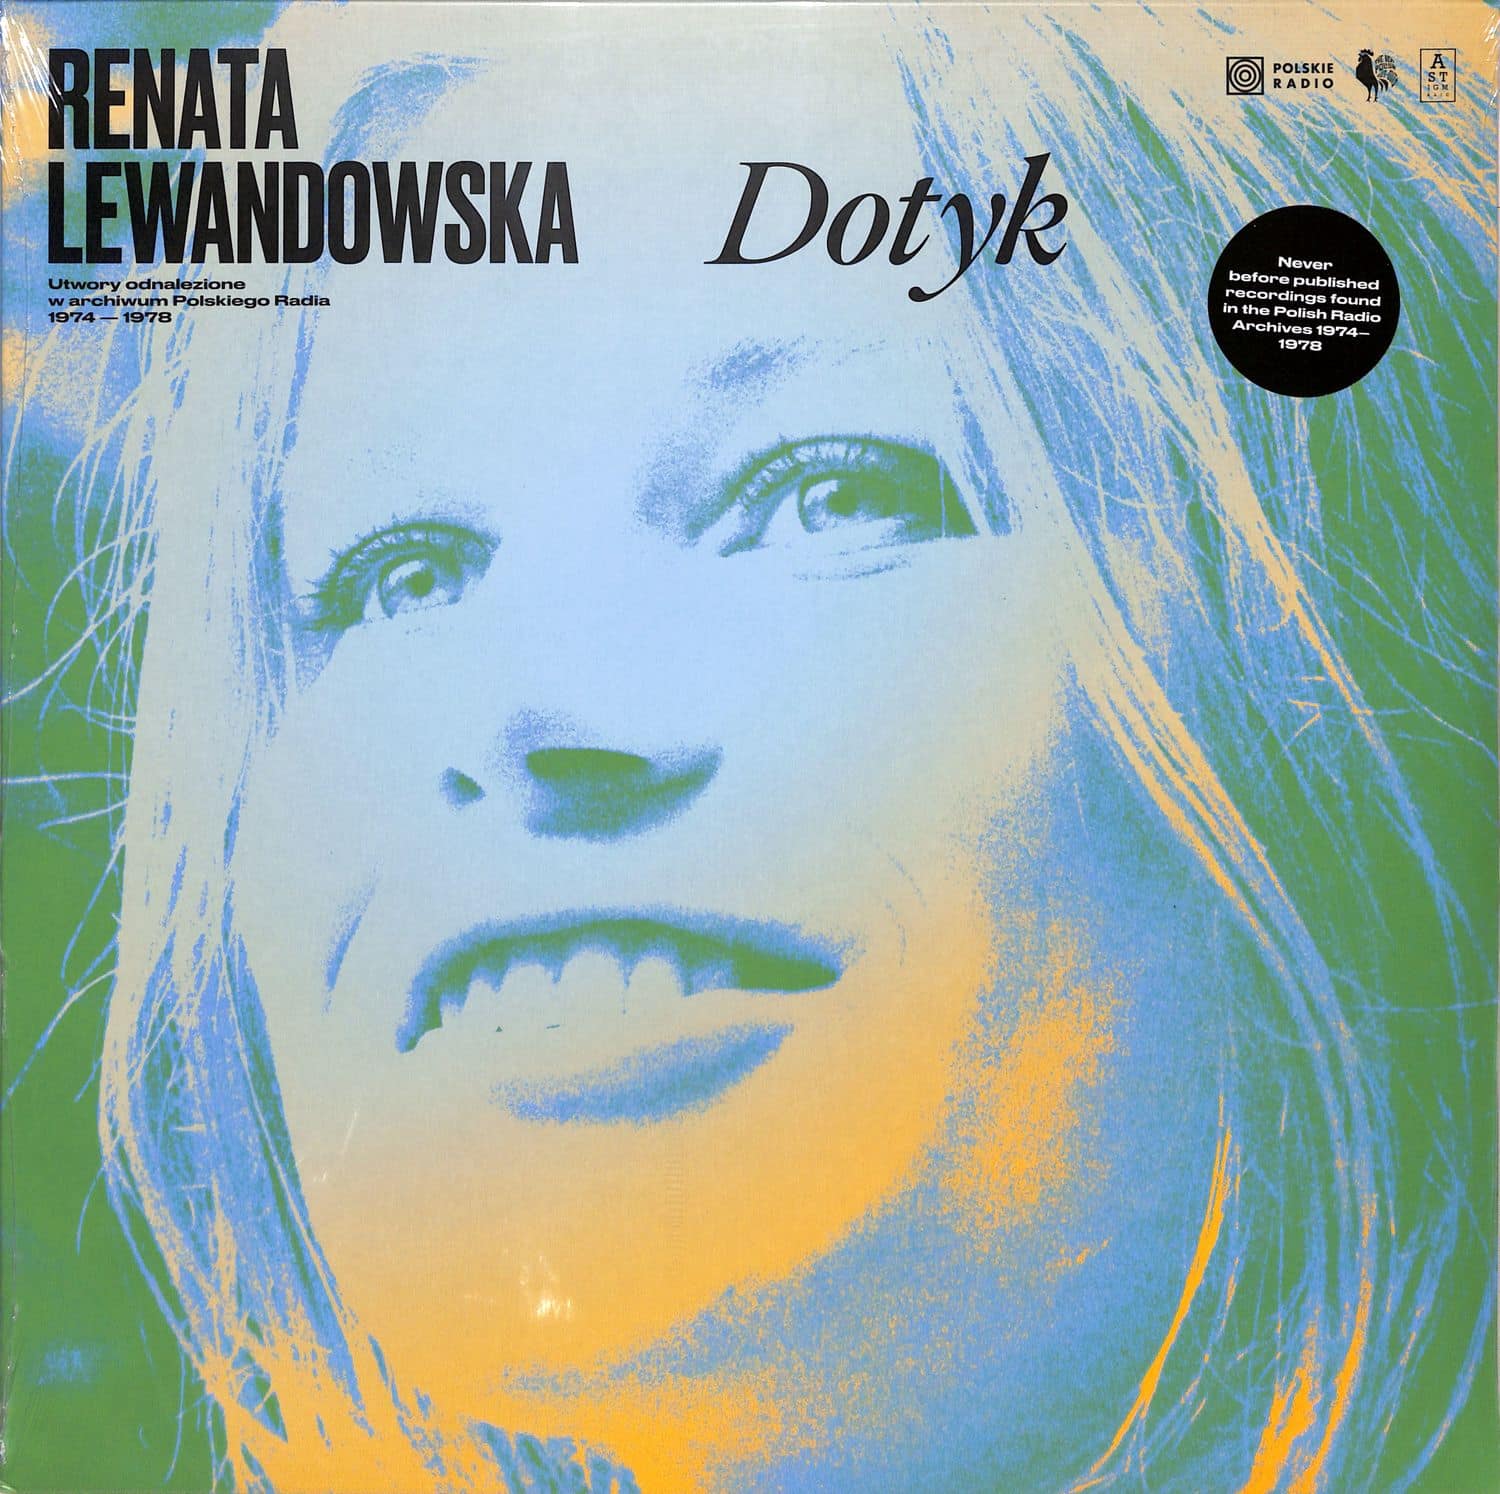 Renata Lewandowska - DOTYK